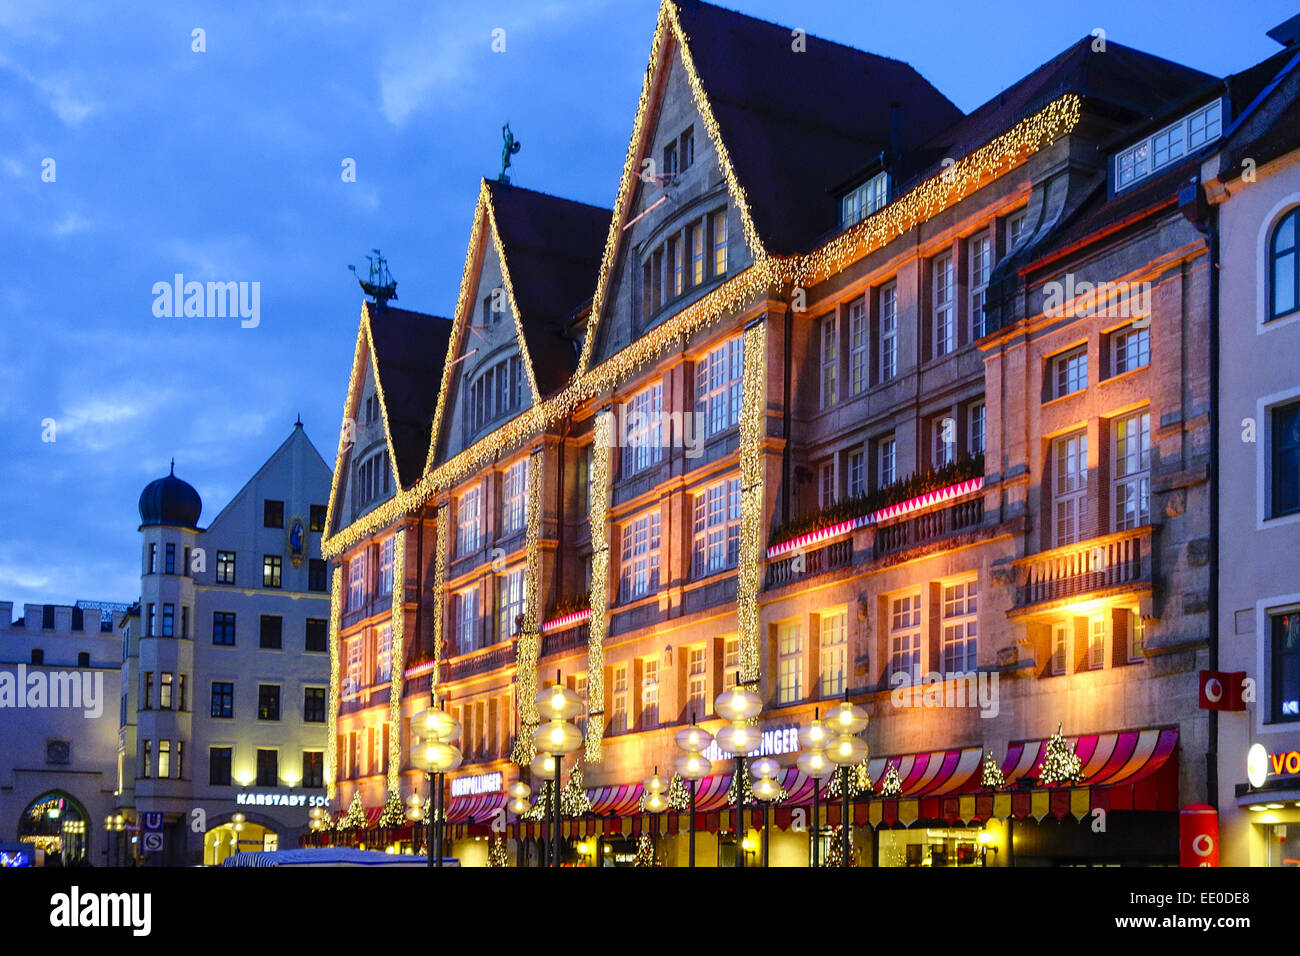 Weihnachtseinkäufe, bunt beleuchtete Kaufhauses la façade des Oberpollinger dans der Neuhauserstrasse à München, le magasinage de Noël Banque D'Images